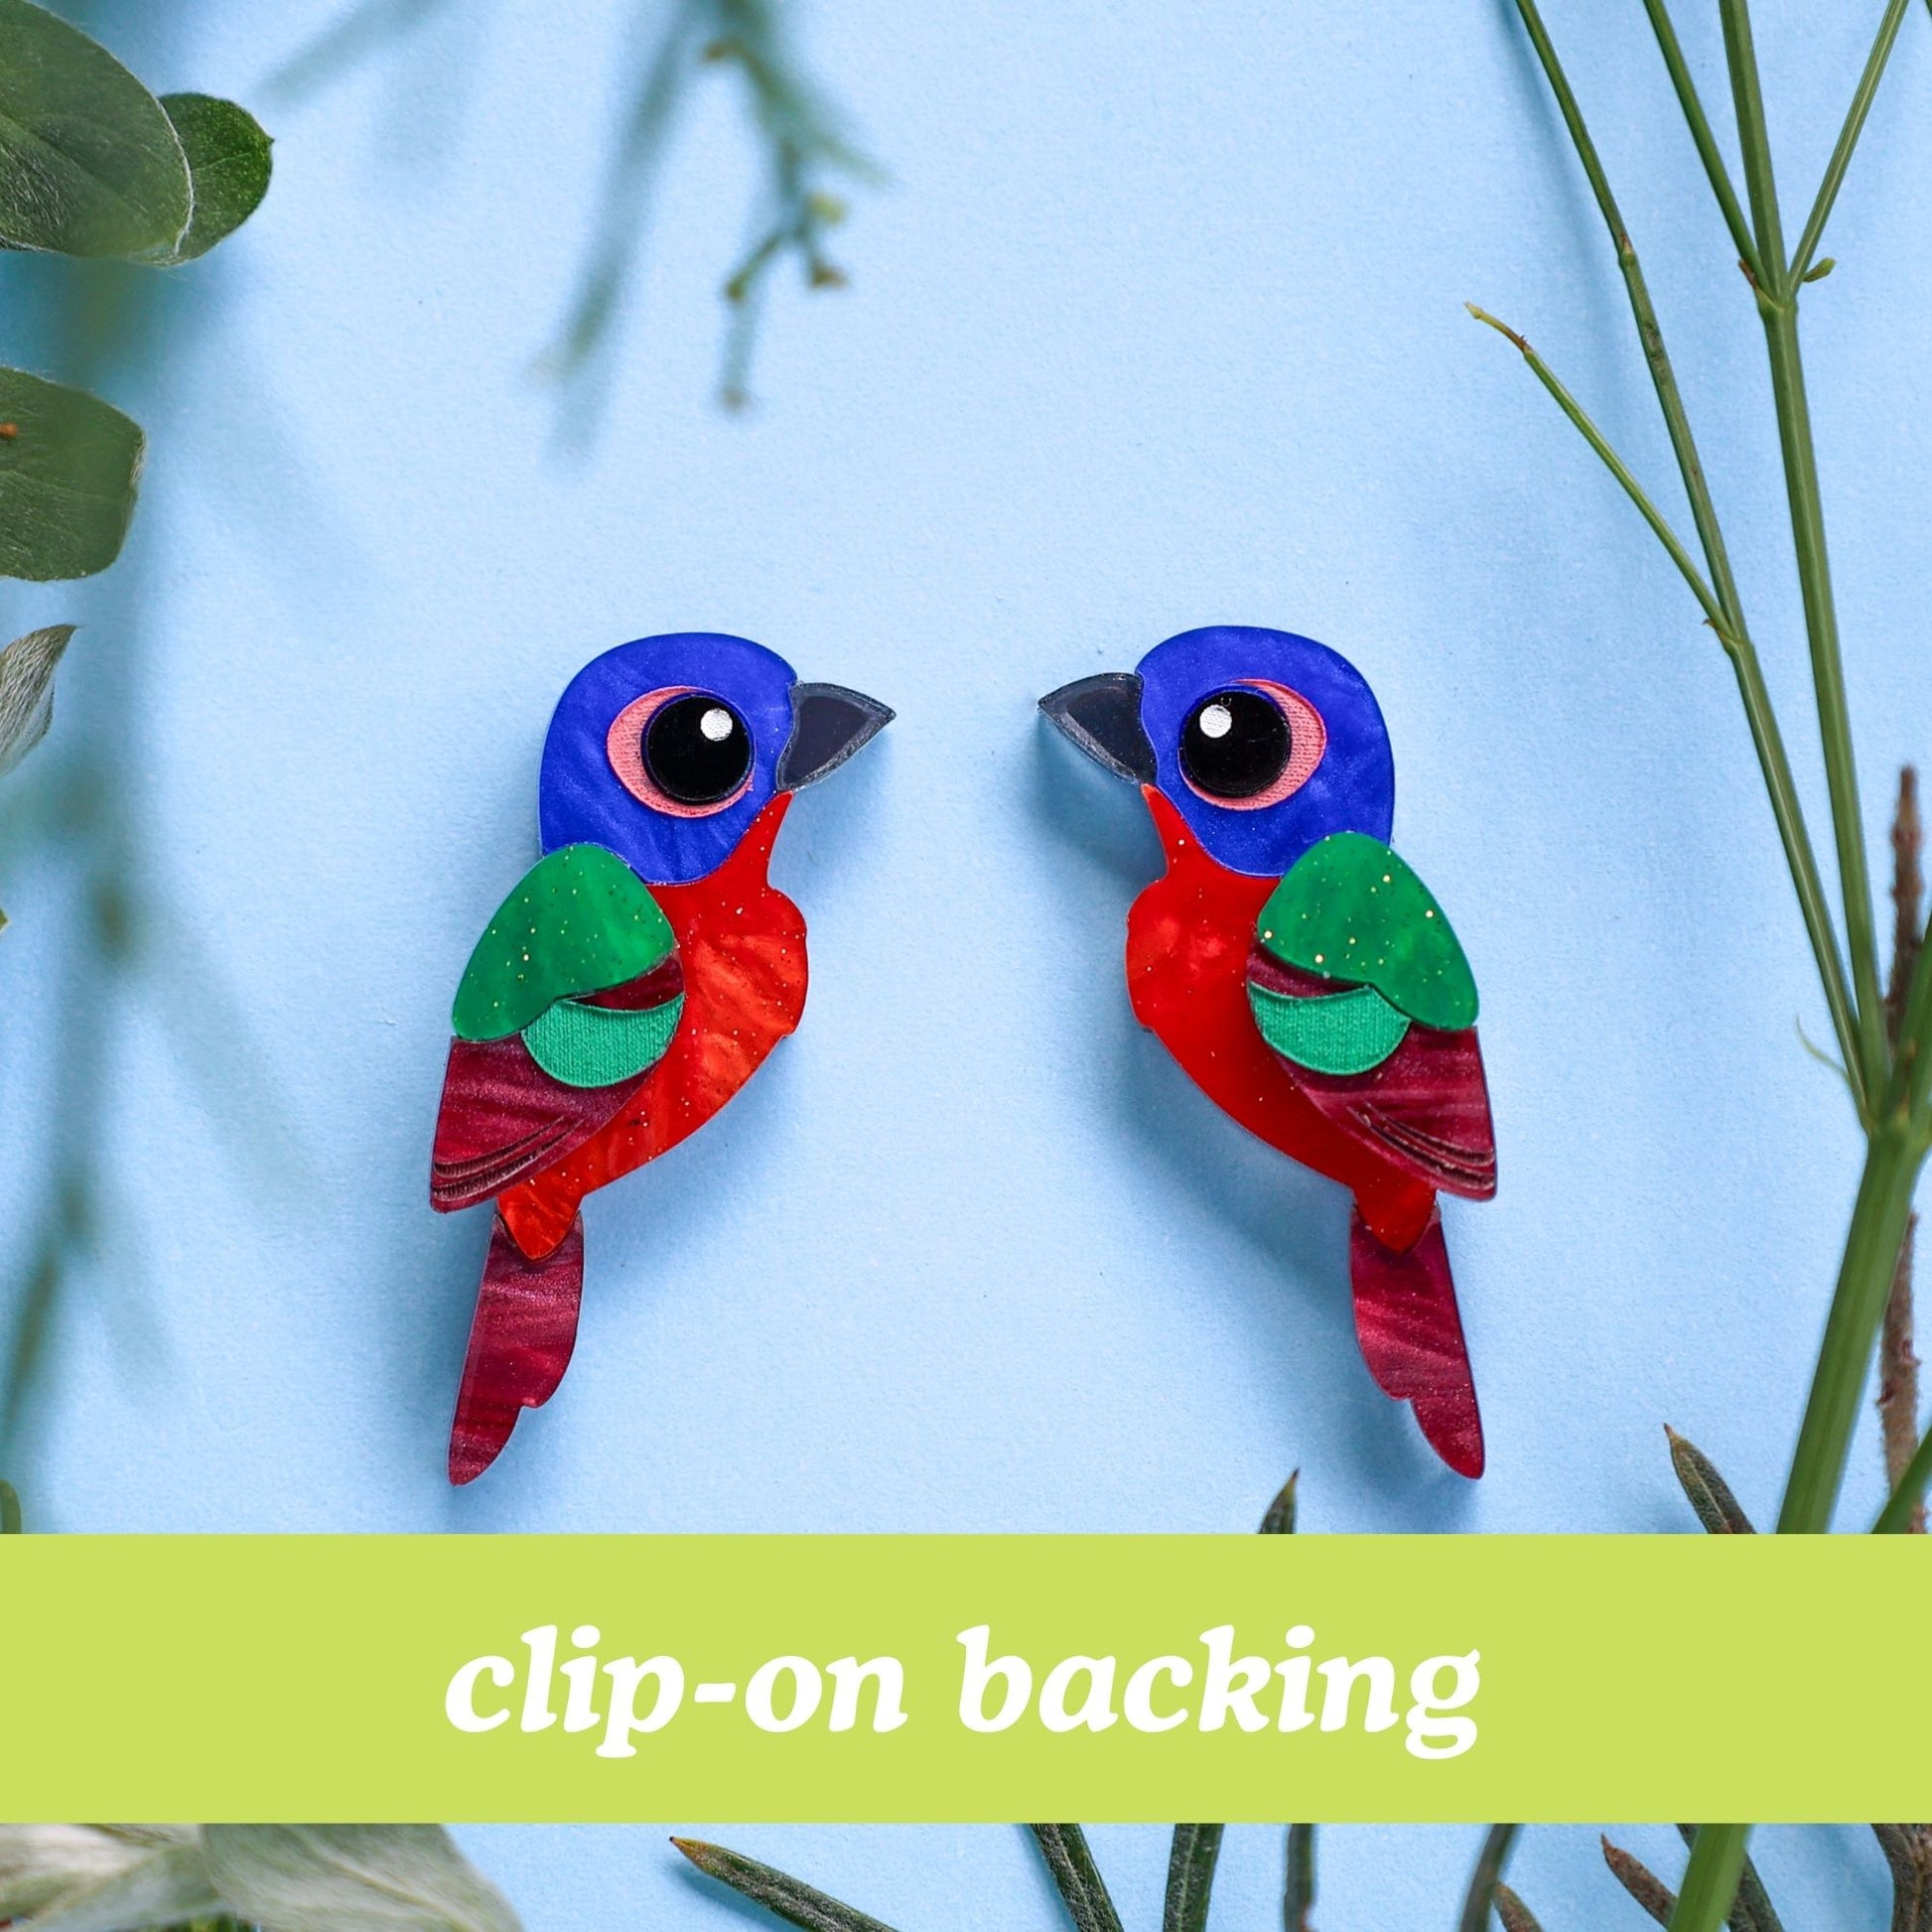 BINKABU - Handmade Painted Bunting Stud Earrings - North American Birds